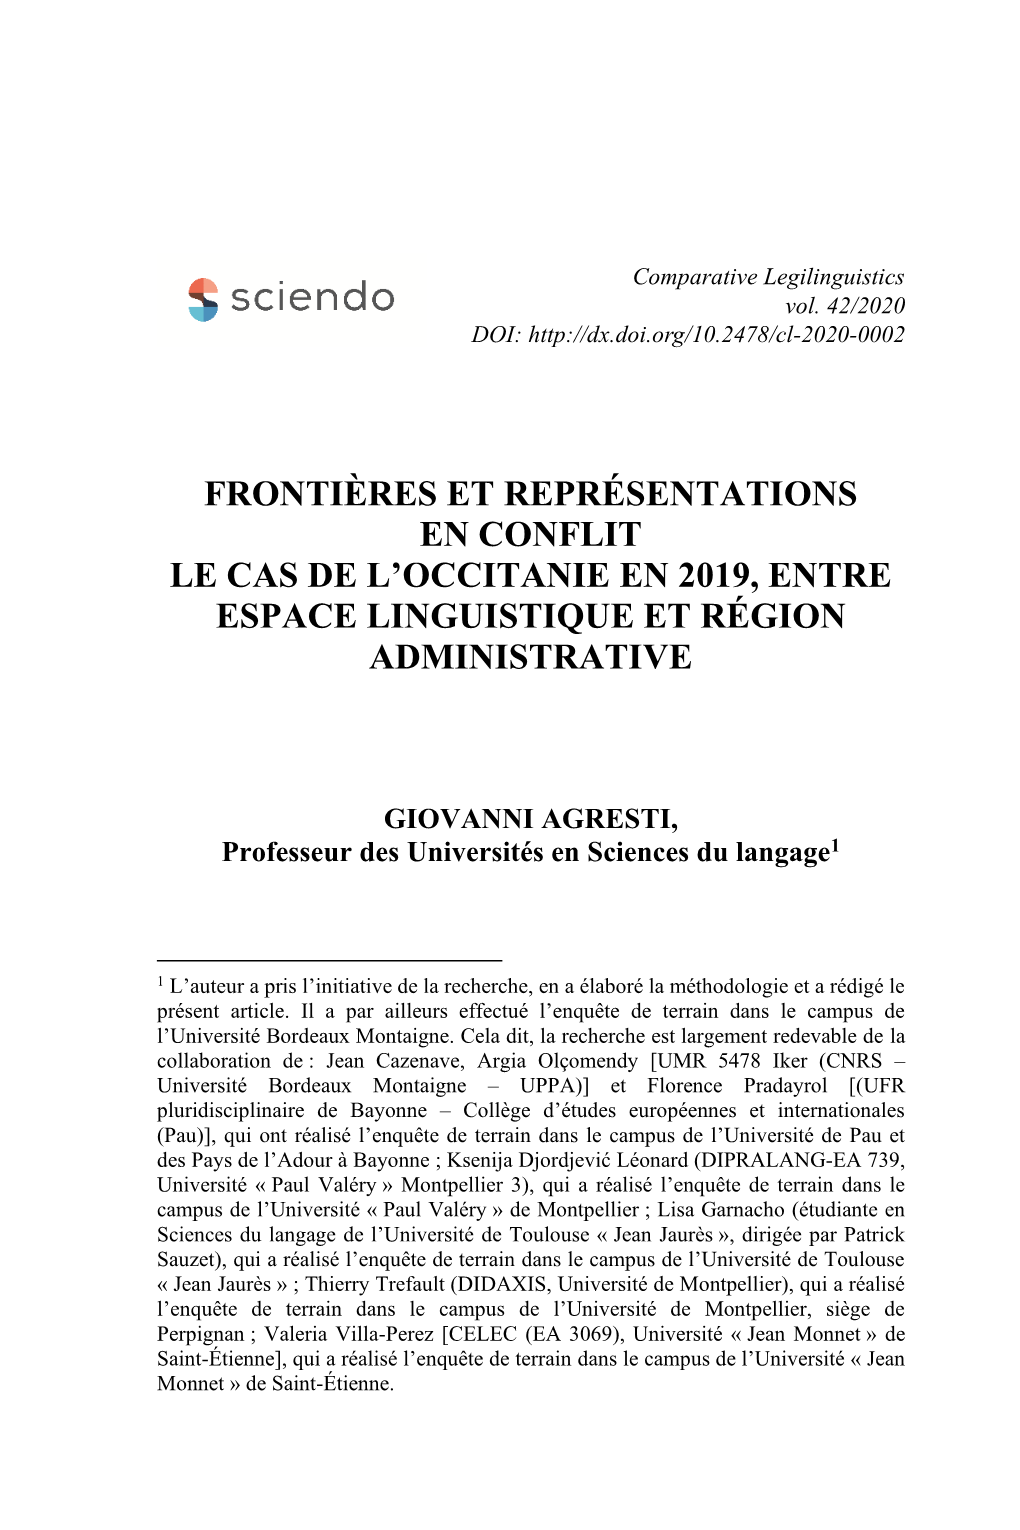 Frontières Et Représentations En Conflit Le Cas De L'occitanie En 2019, Entre Espace Linguistique Et Région Administrative